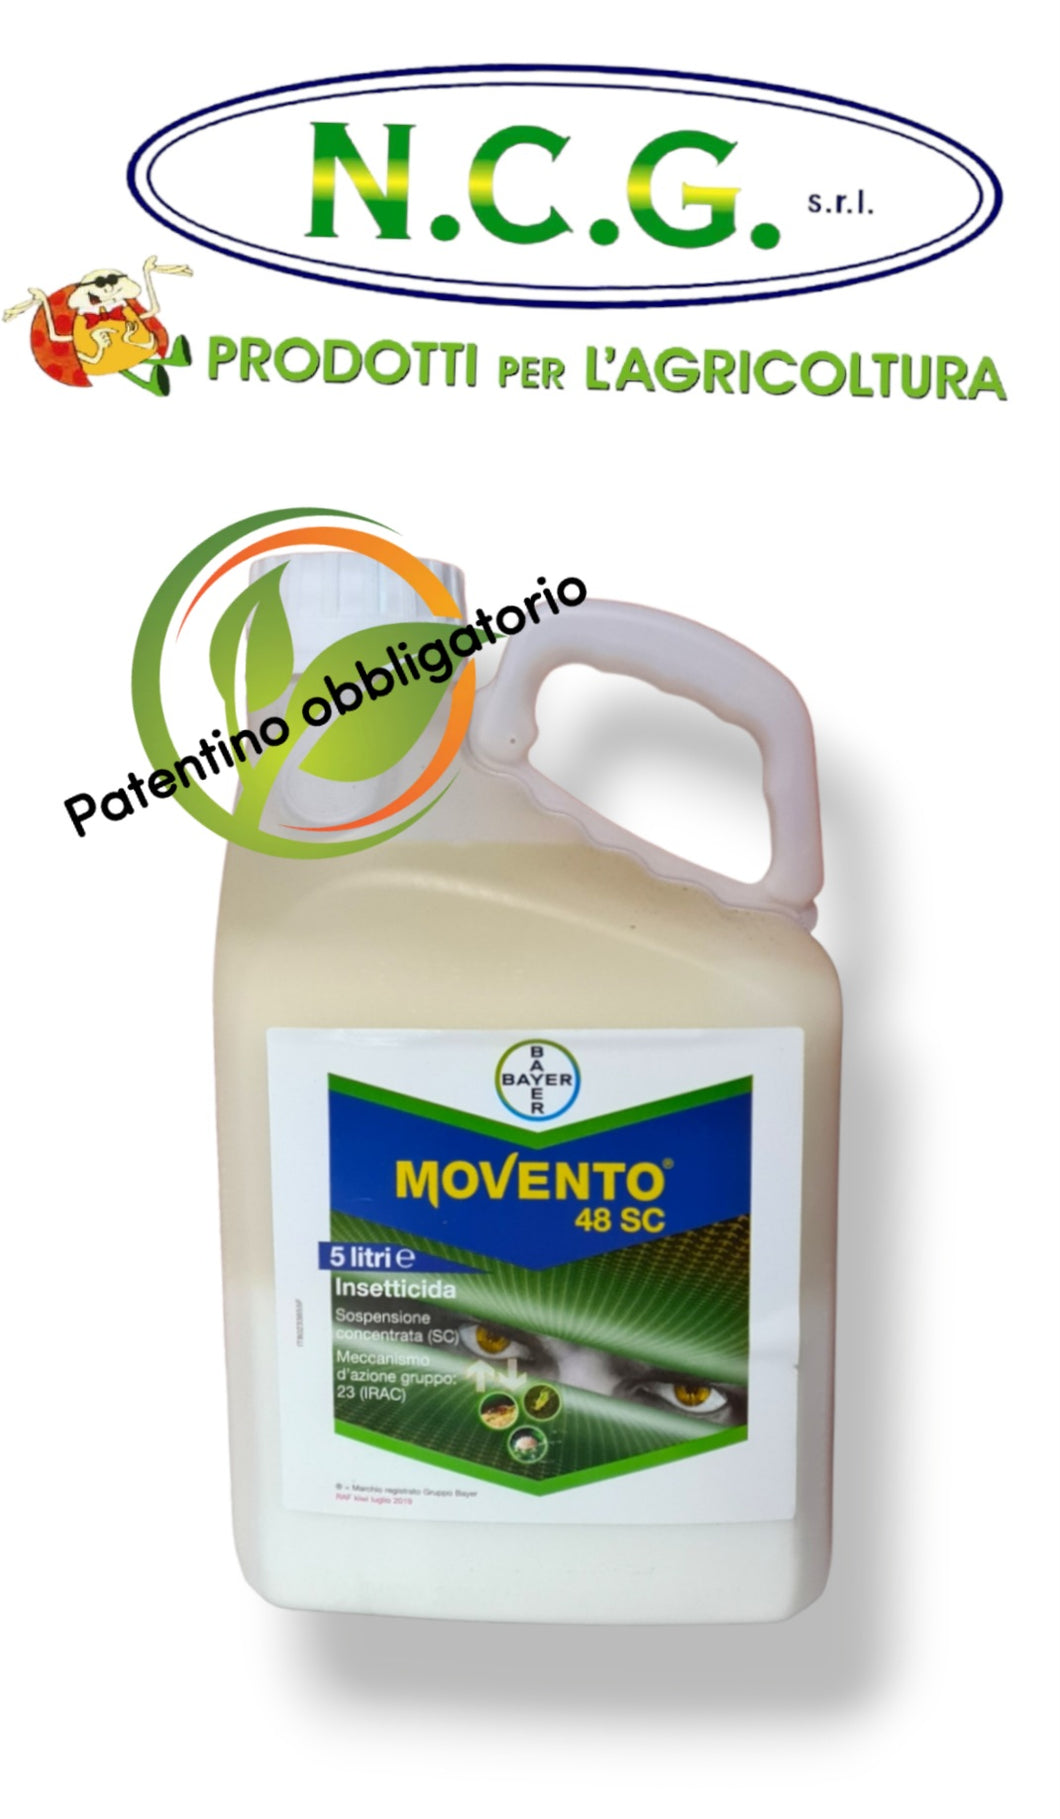 Movento 48 SC Bayer da lt 5 insetticida sistemico contro afide, cocciniglia mosca bianca